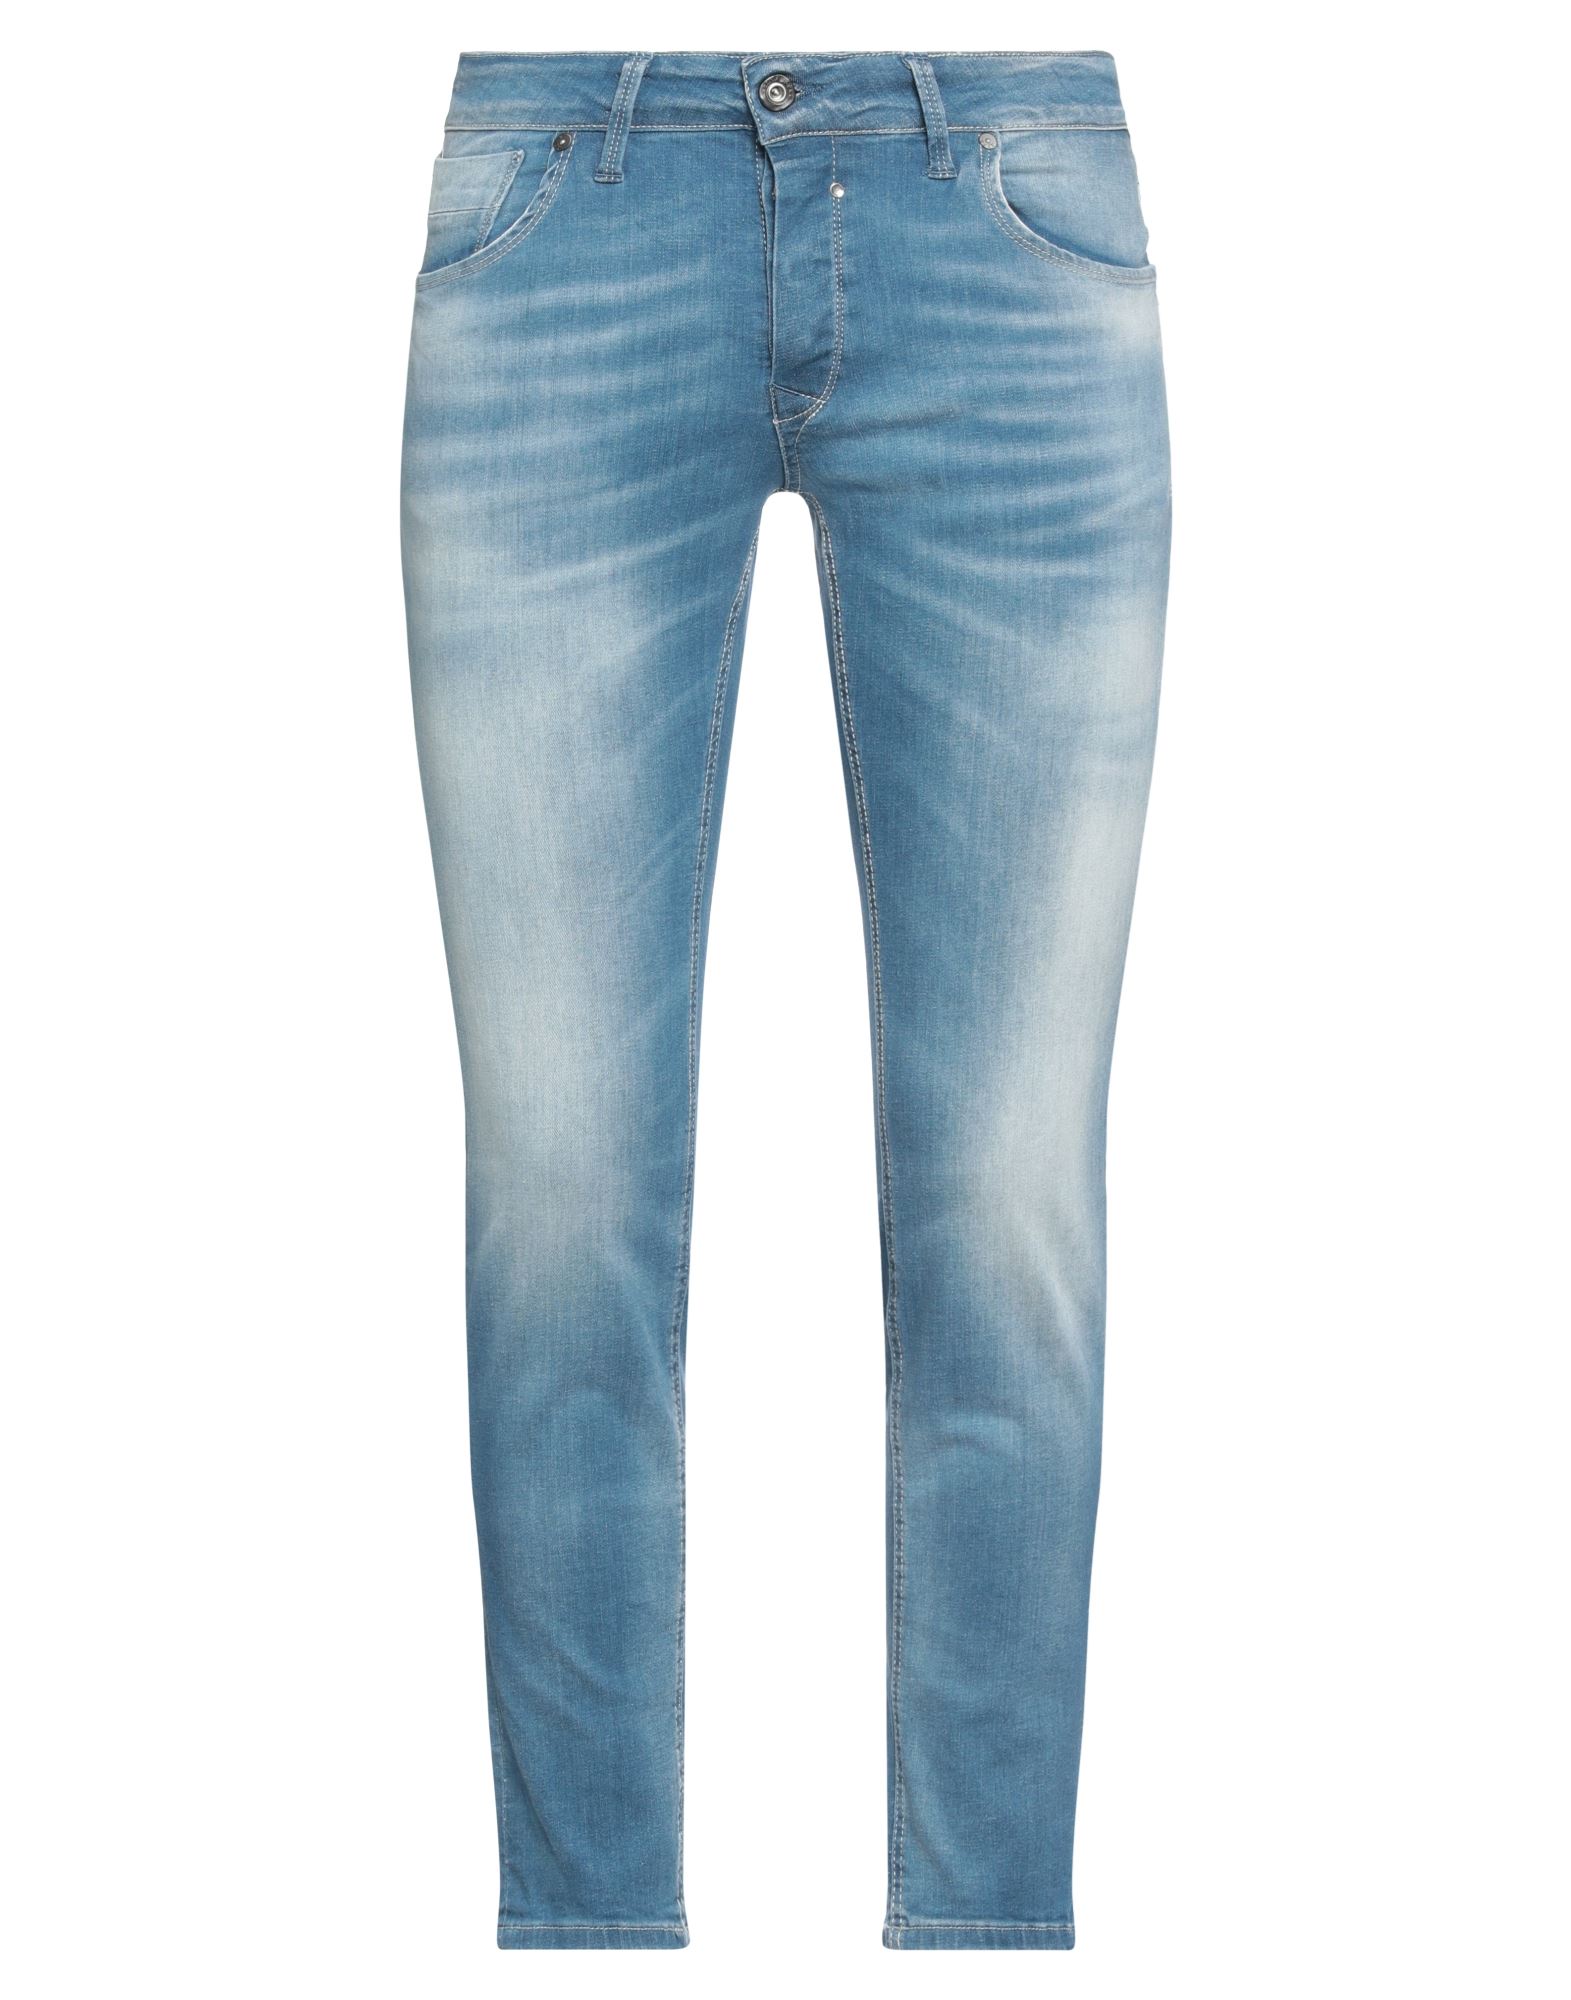 Jack & Jones Man Jeans Blue Size 34w-30l Cotton, Elastane